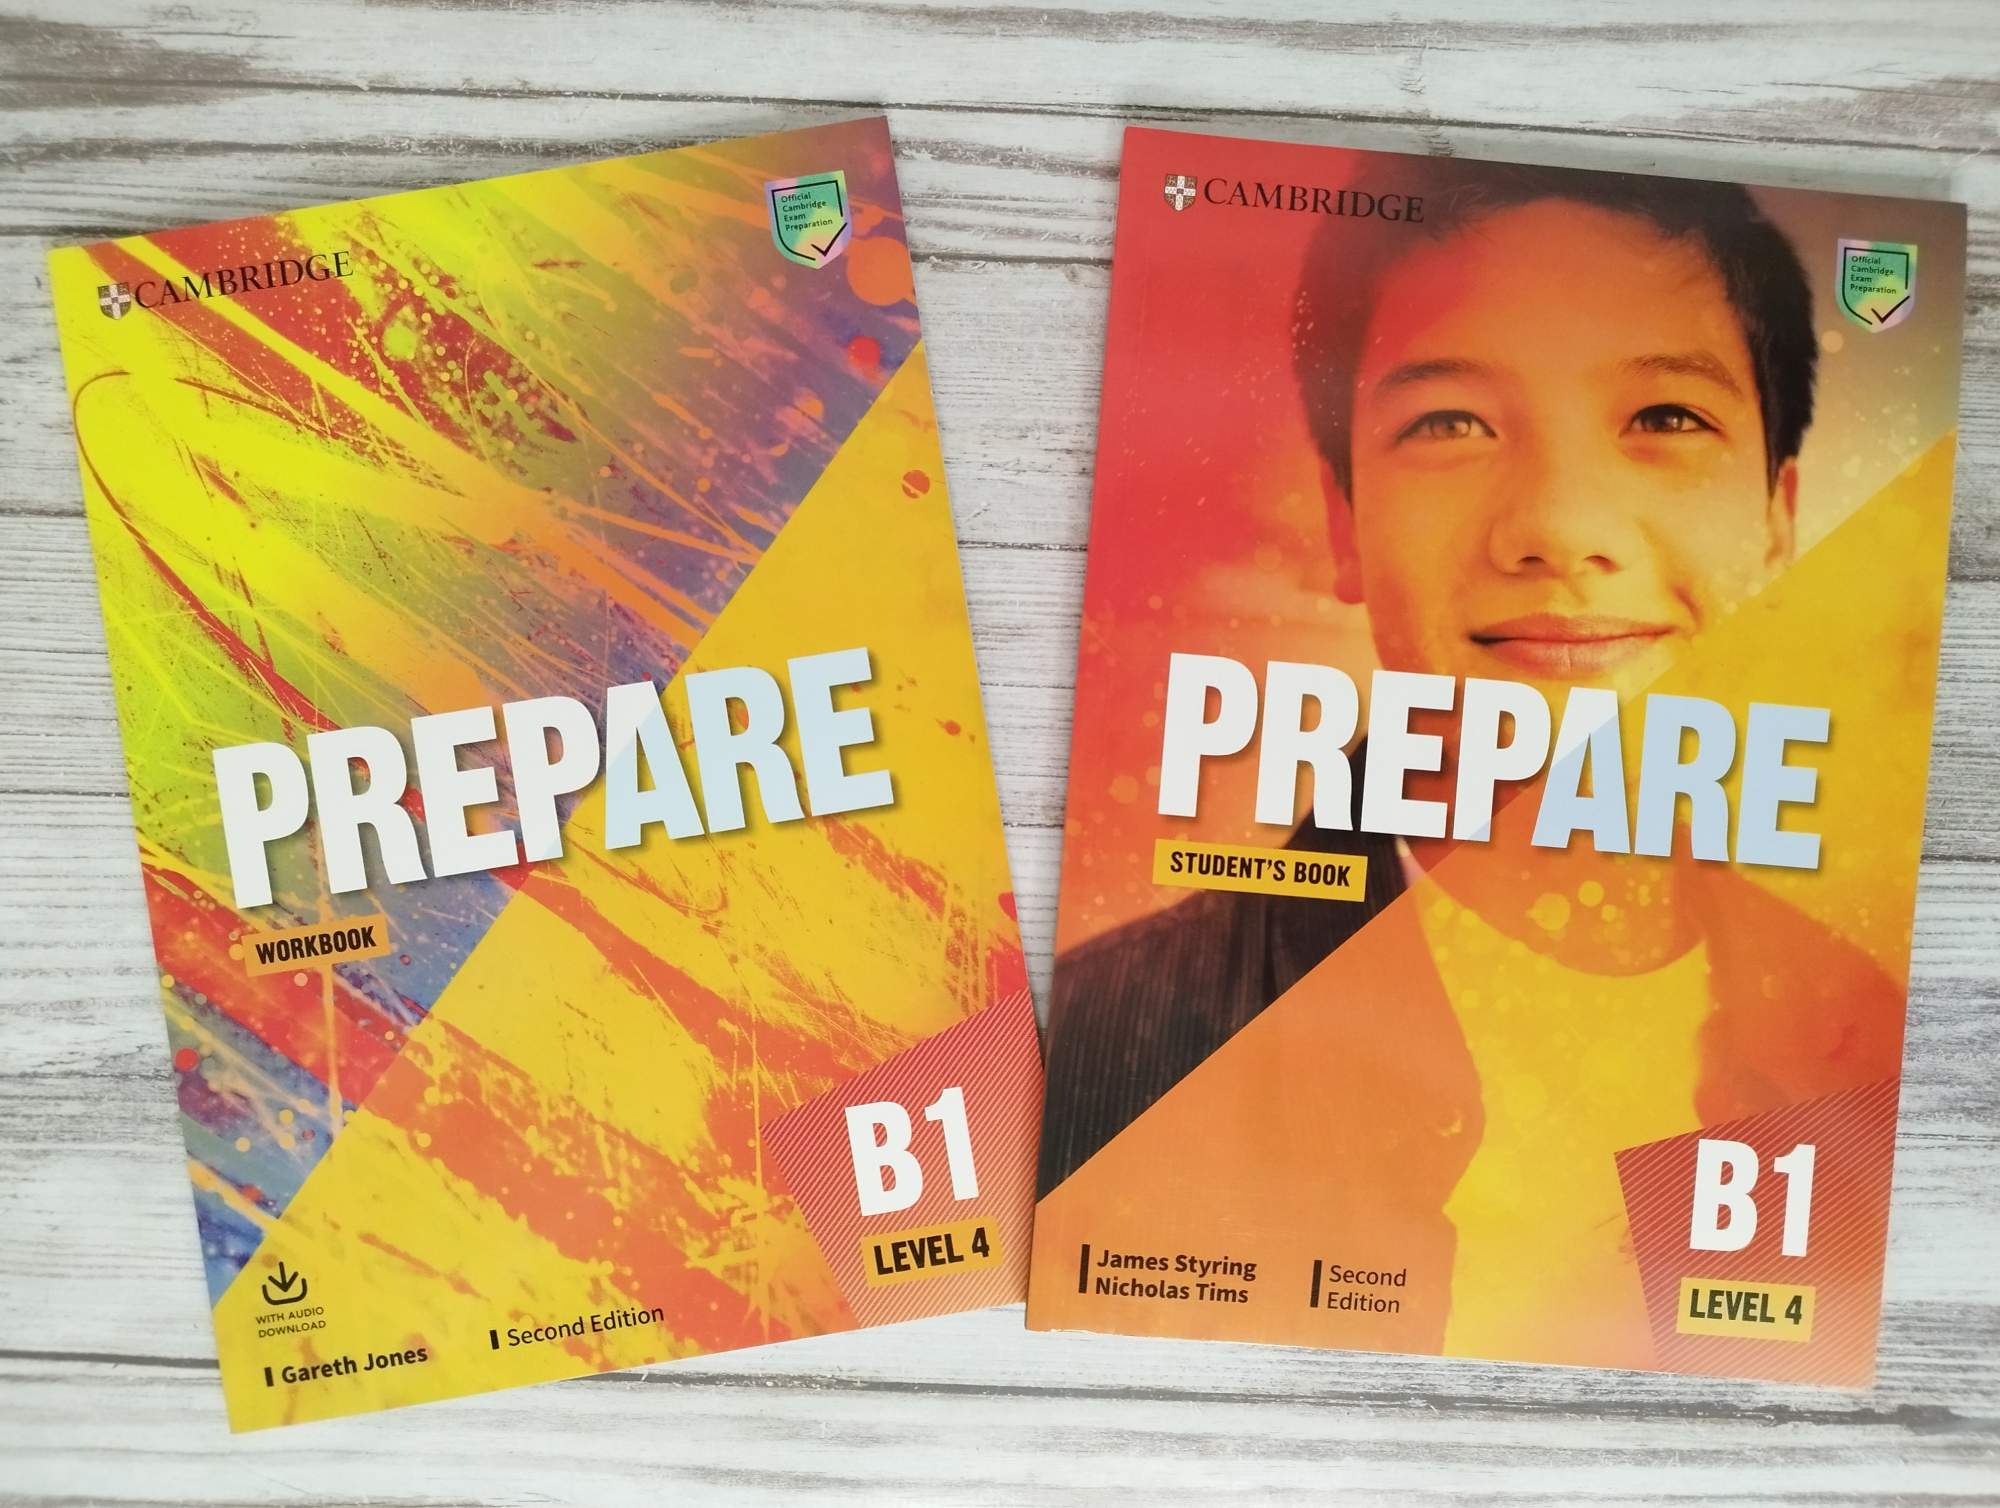 Учебник prepare. Prepare учебник. Учебник prepare 4. Учебник Cambridge prepare b1. Два мальчика из учебника prepare b1.